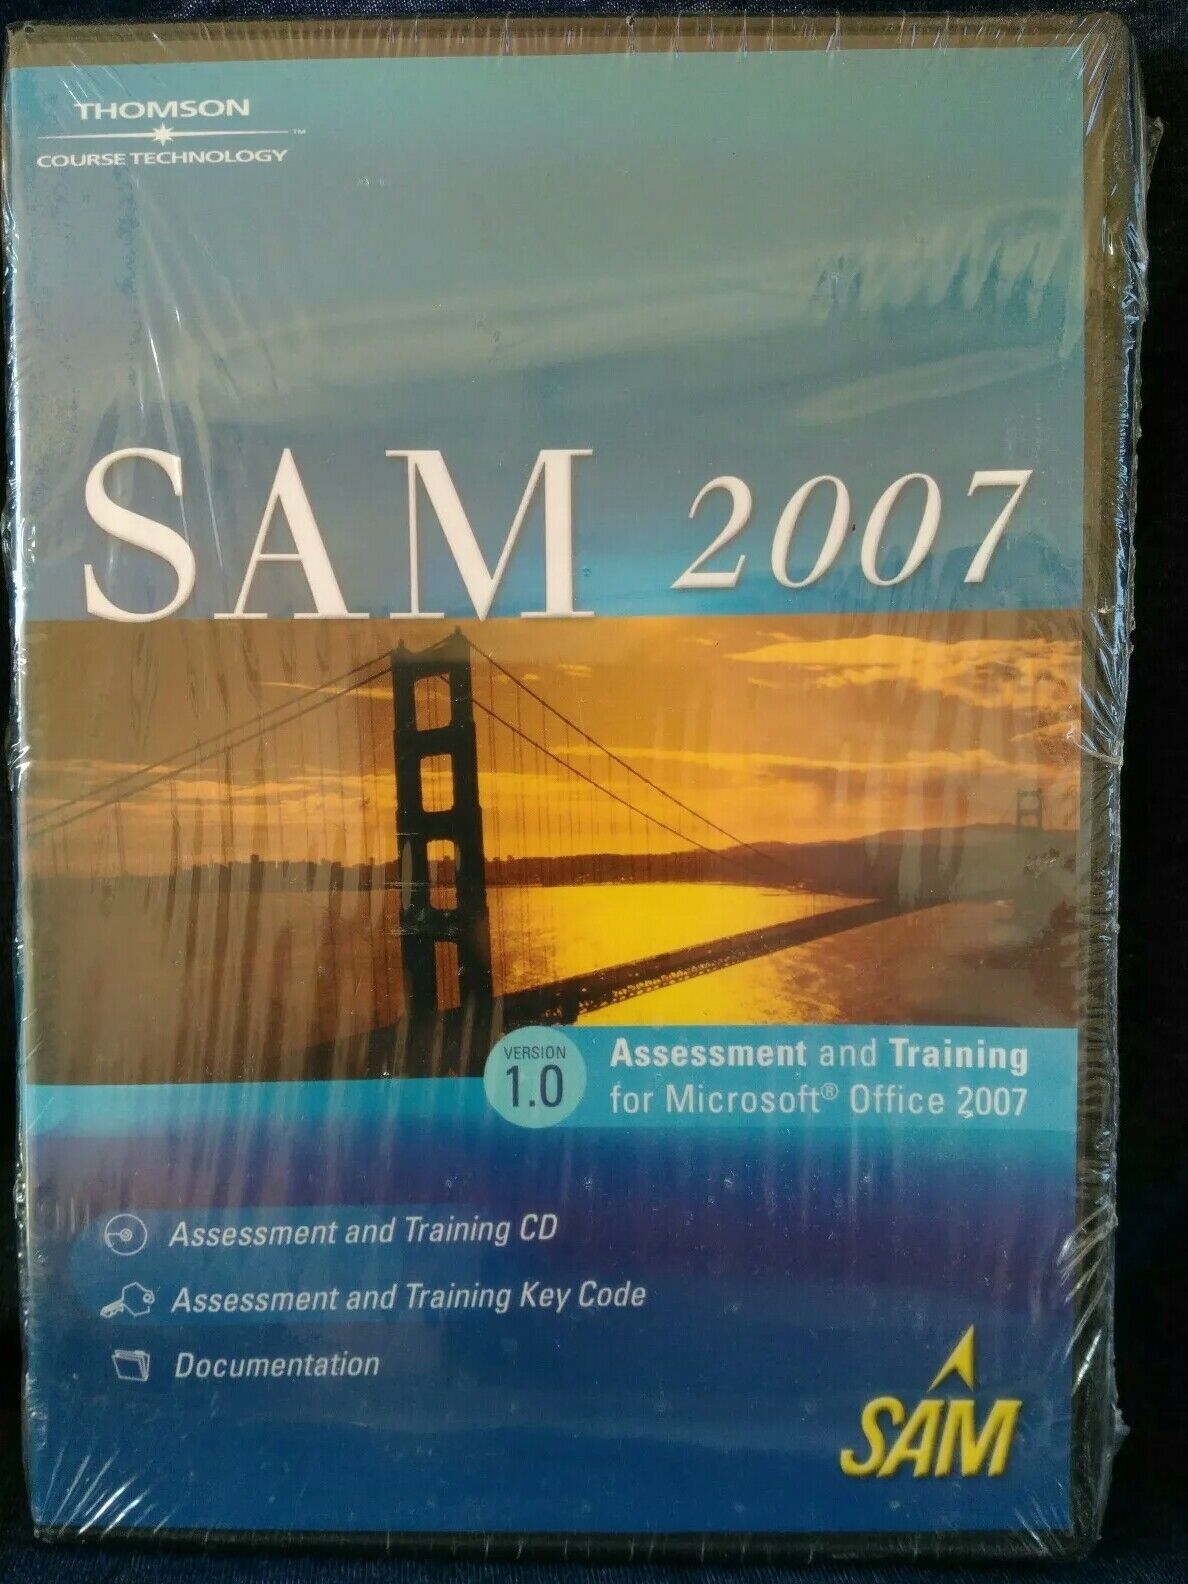 SAM 2007 Version 1.0 Assessment and Training for Microsoft Office 2007 CD-ROM NE